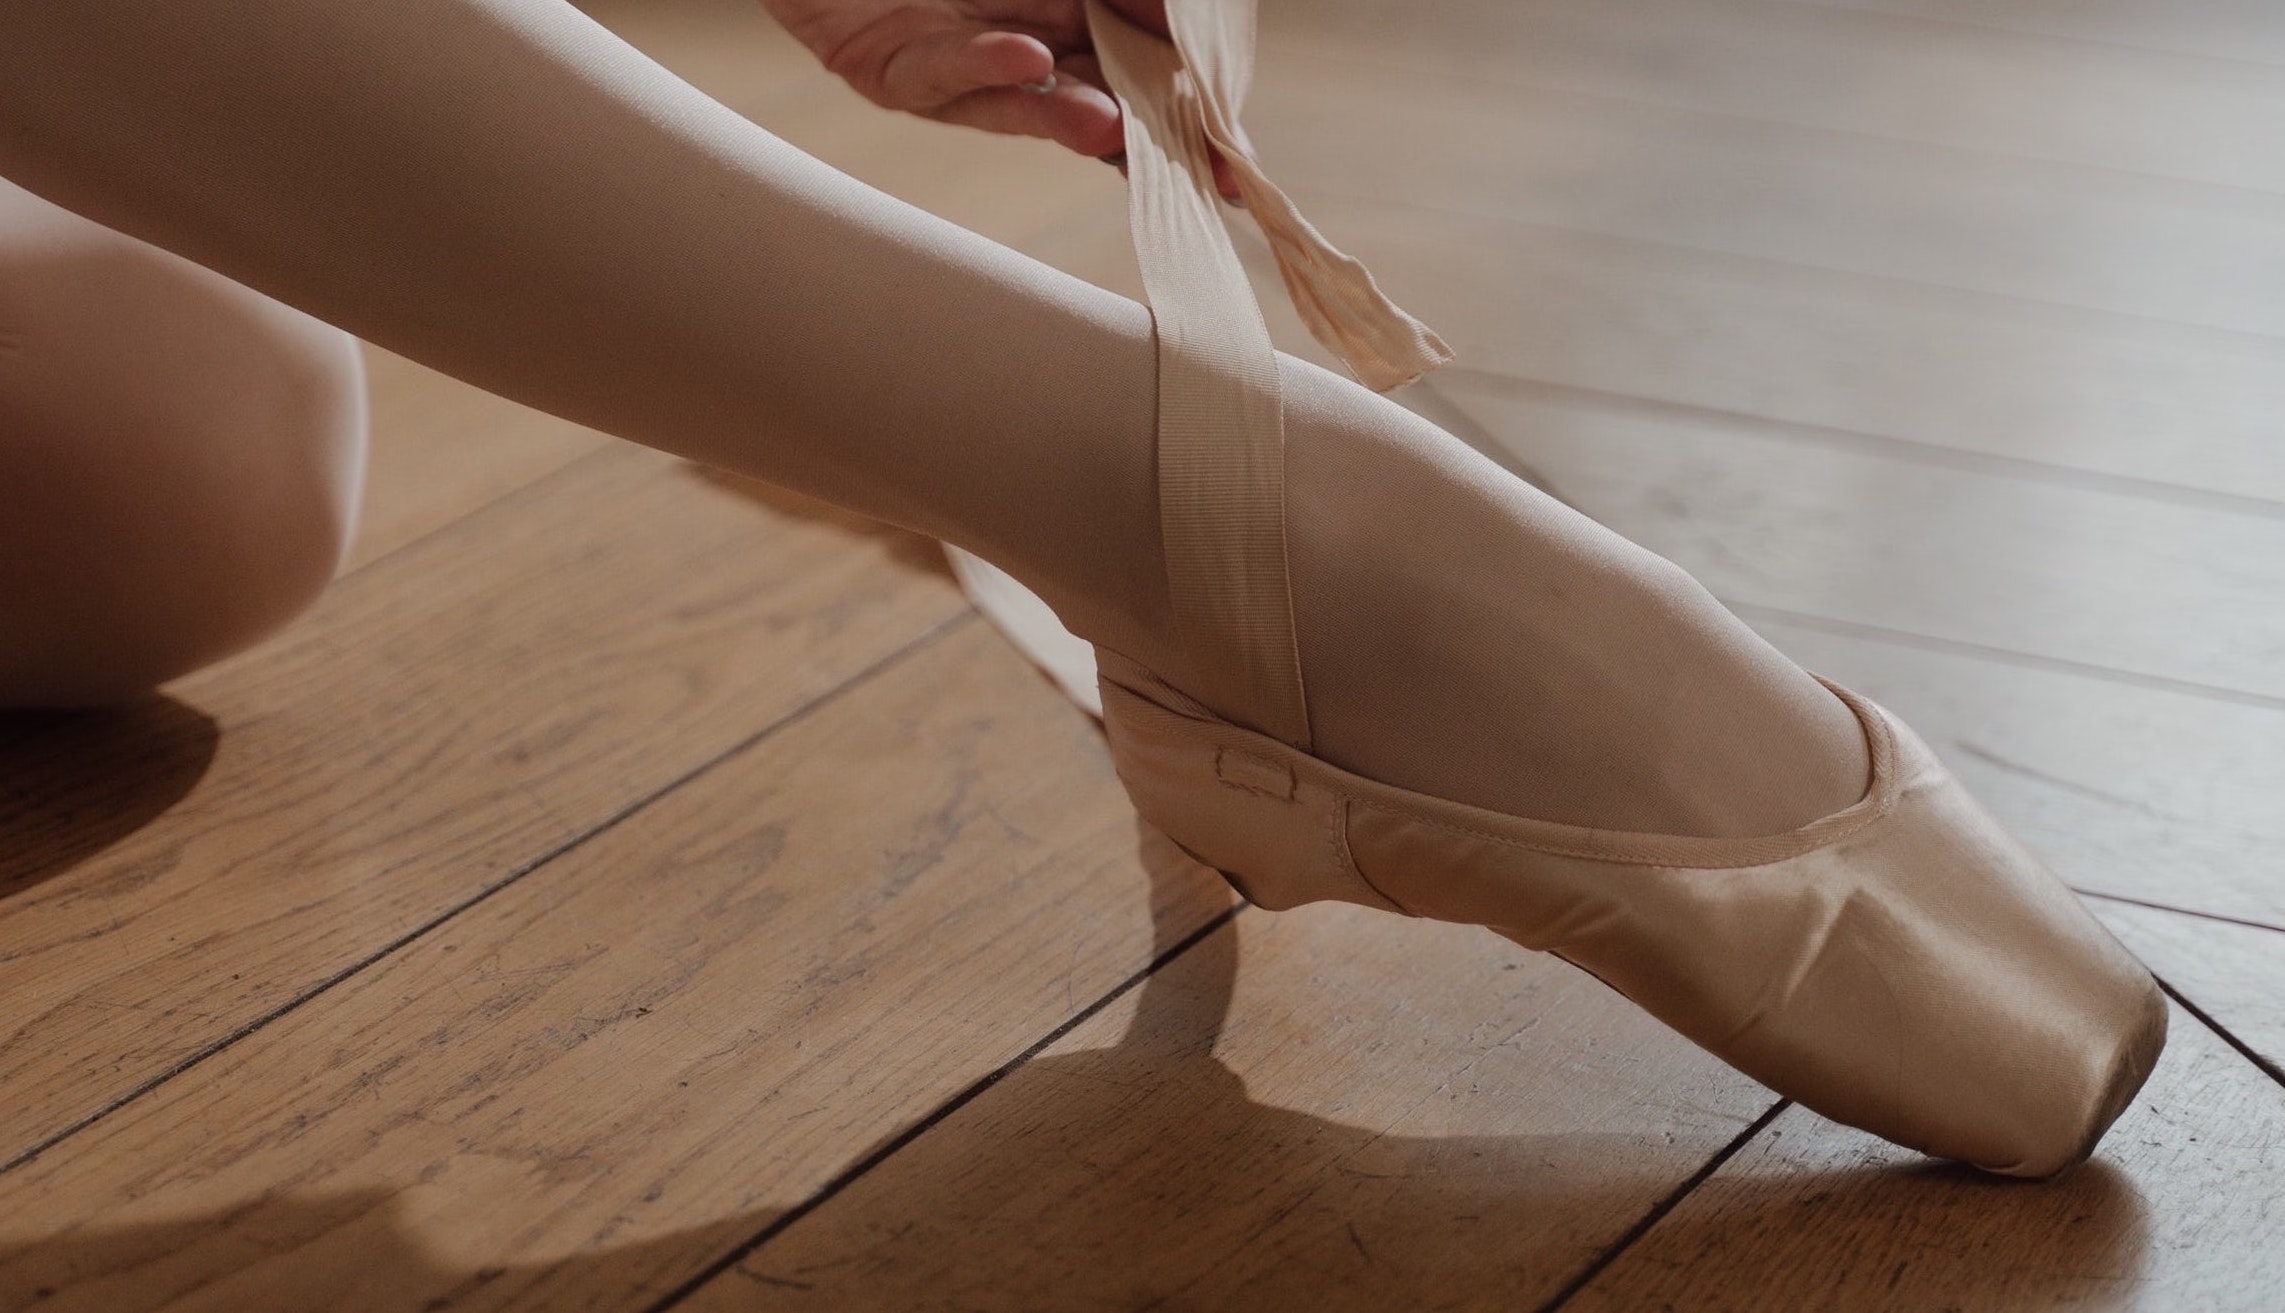 pointe shoes ballerina